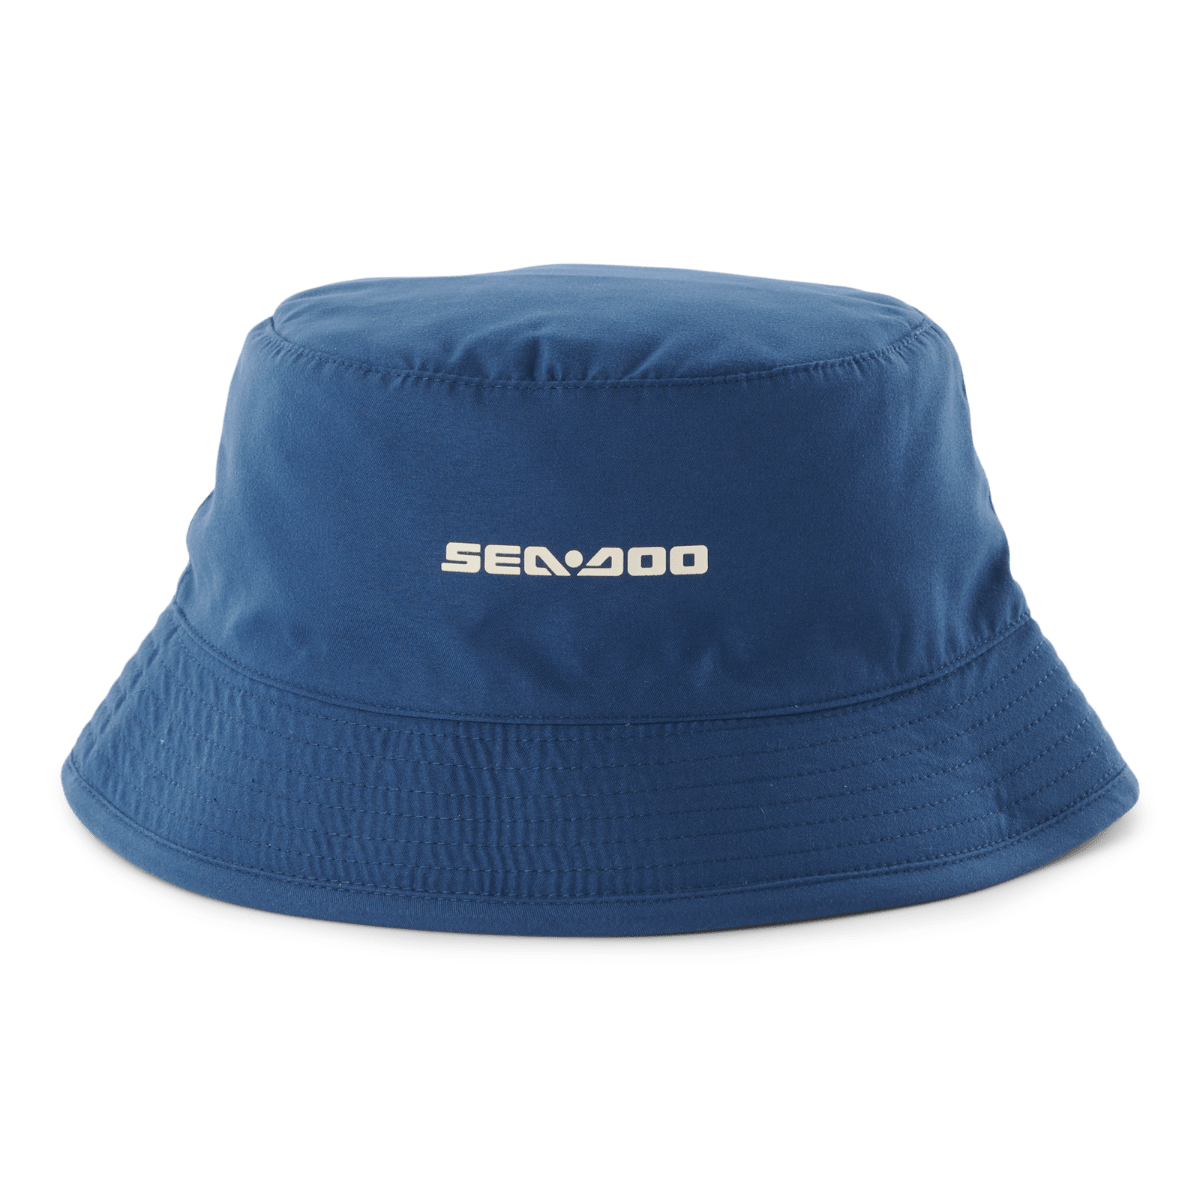 Unisex Reversible Bucket Hat